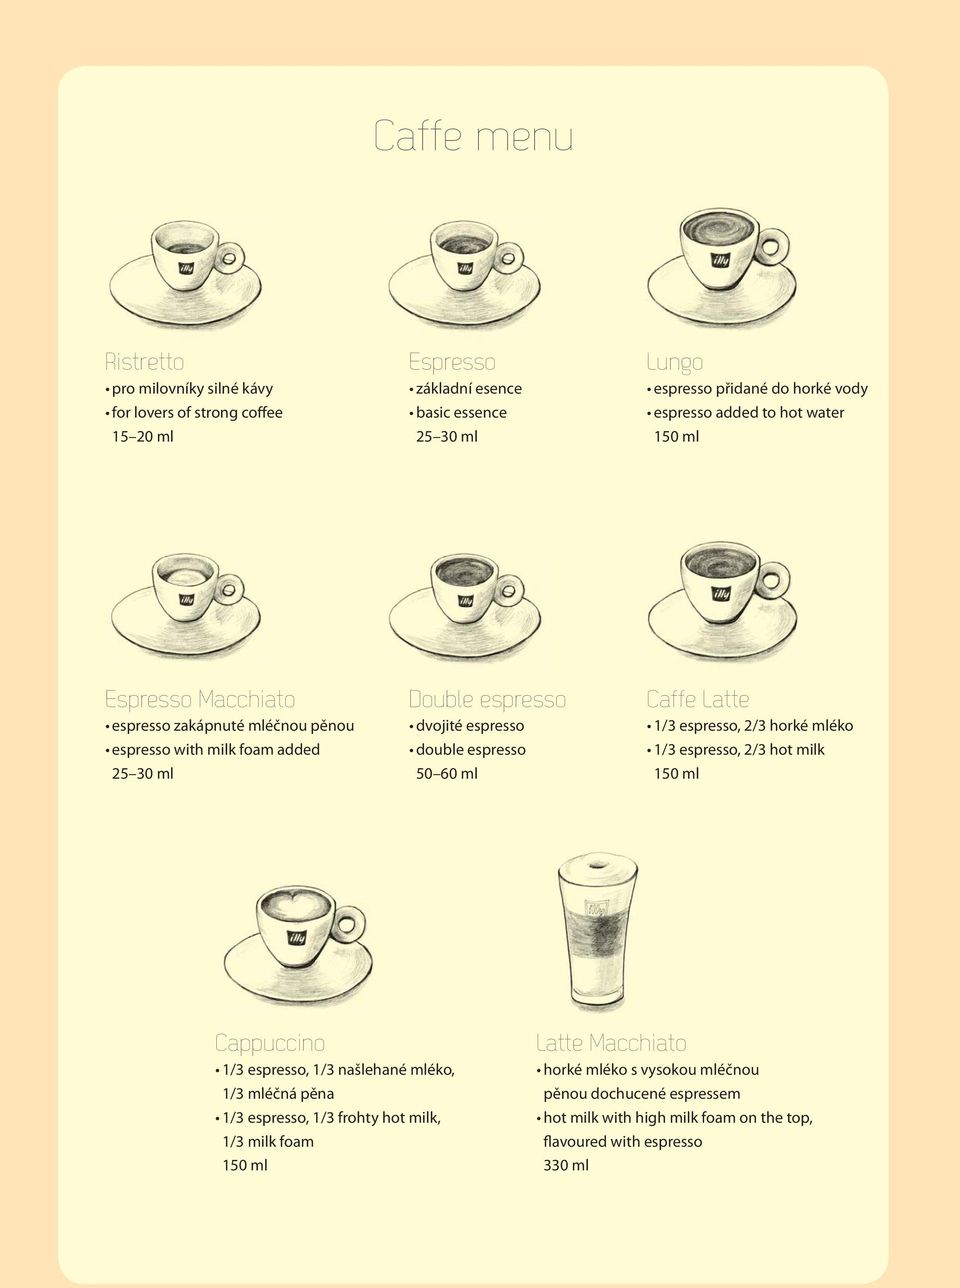 espresso 50 60 ml Caffe Latte 1/3 espresso, 2/3 horké mléko 1/3 espresso, 2/3 hot milk 150 ml Cappuccino 1/3 espresso, 1/3 našlehané mléko, 1/3 mléčná pěna 1/3 espresso,